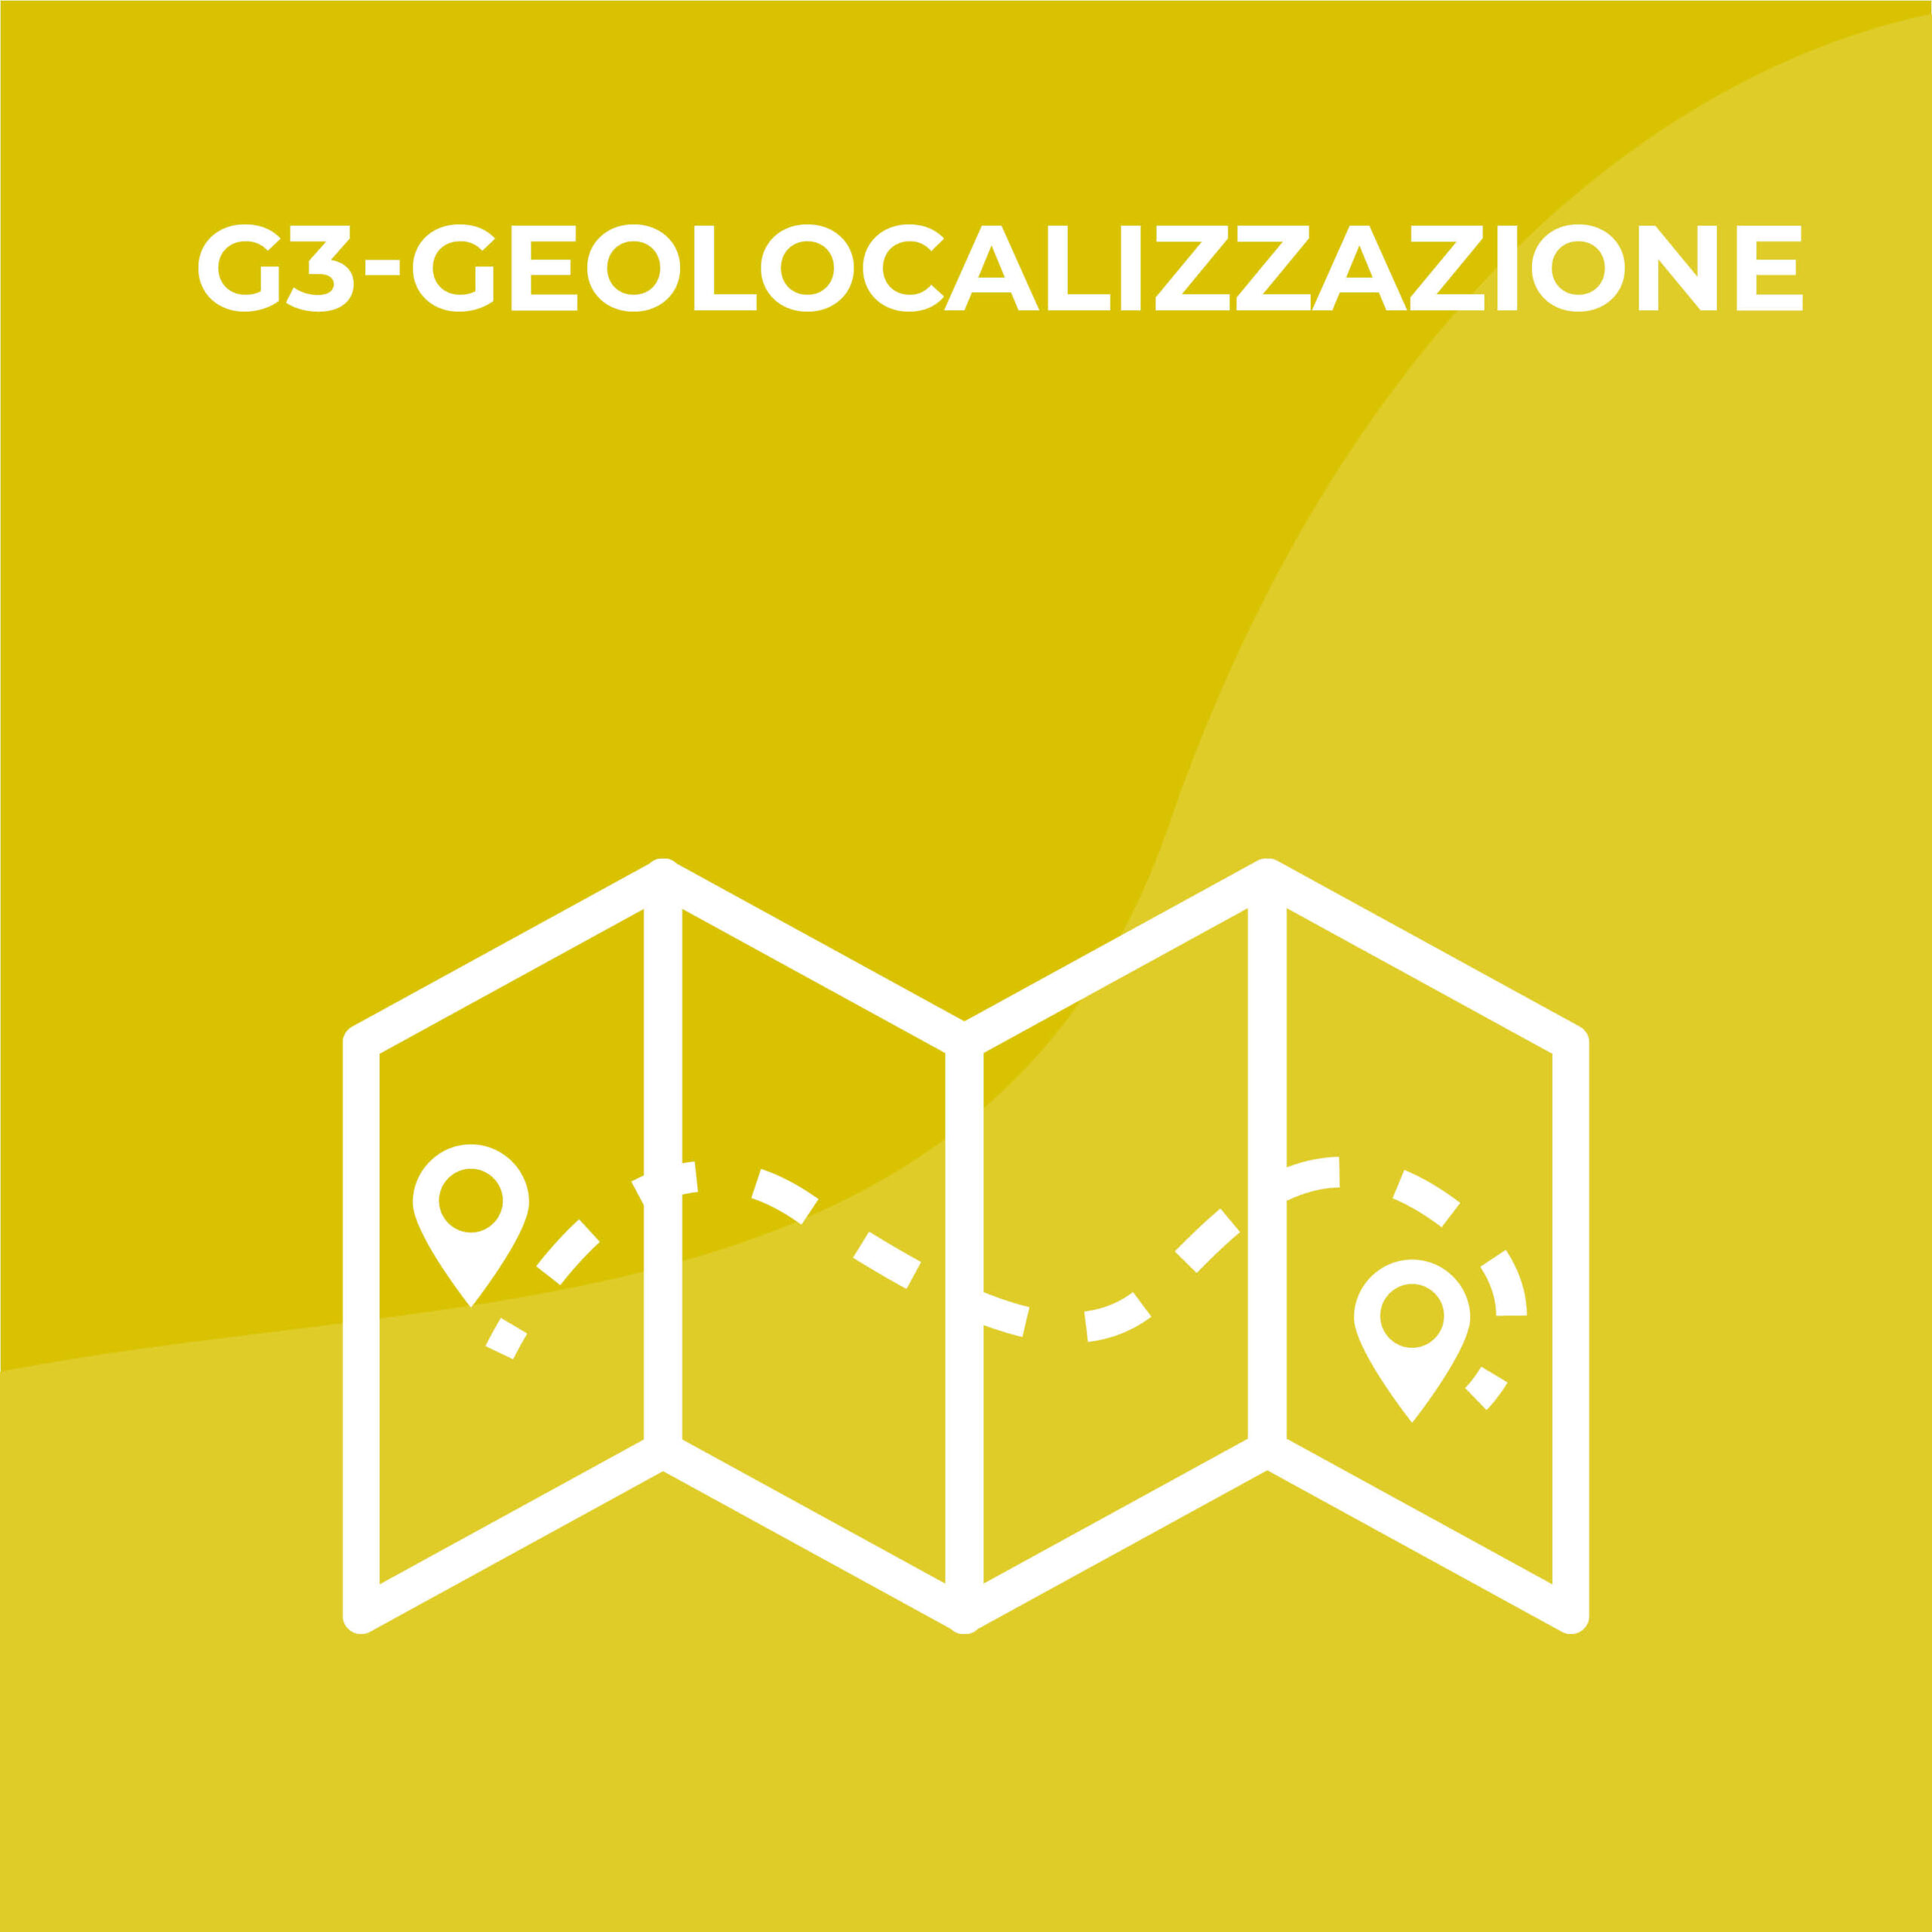 G3 - Geolocalizzazione